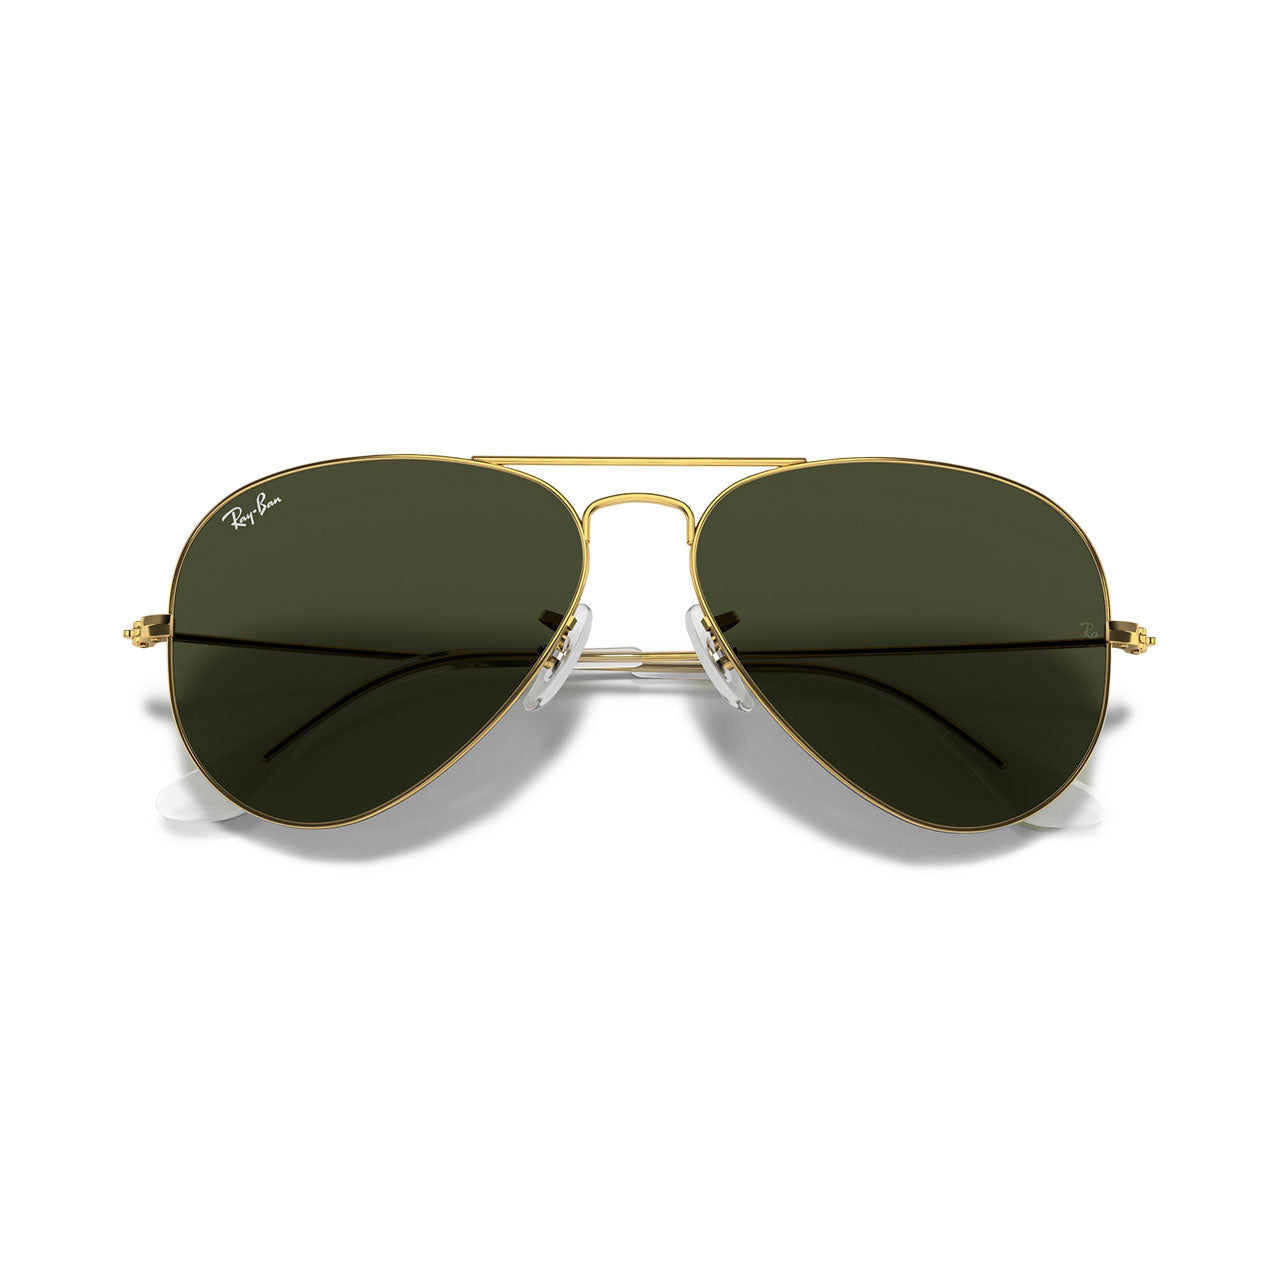 Tom Top Gun Ray-Ban Aviator Sunglasses | Uncrate